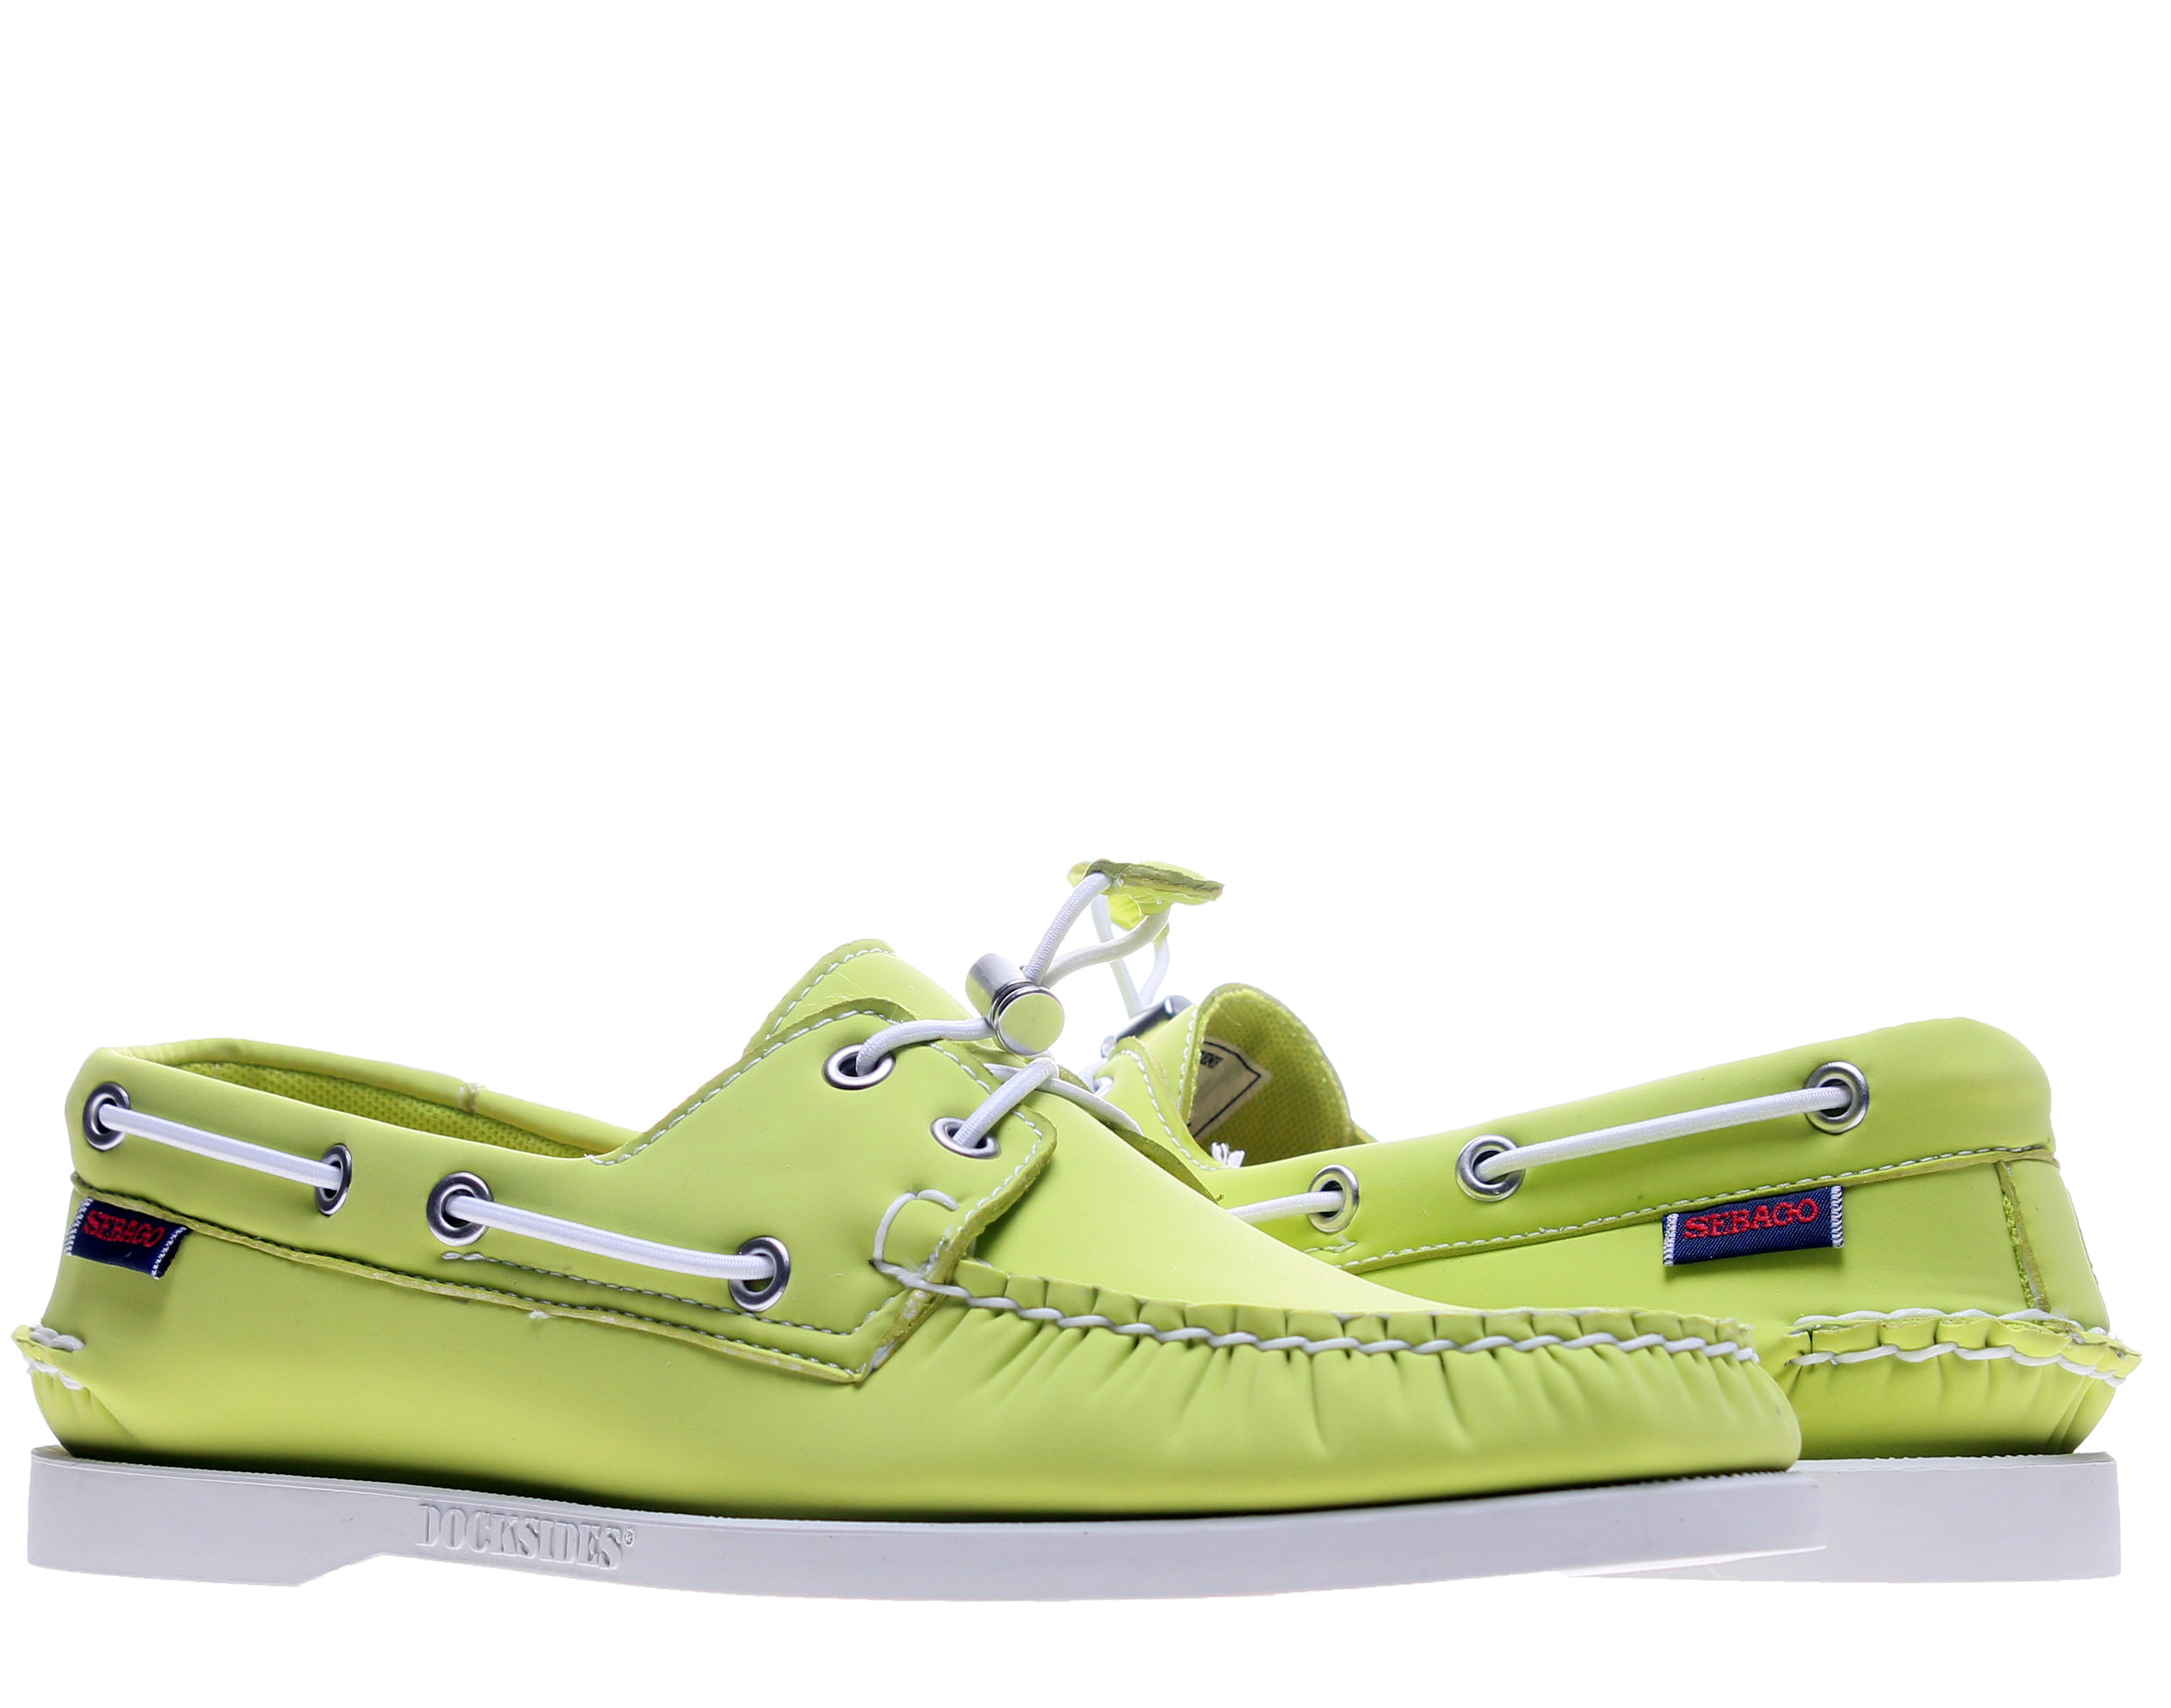 neoprene boat shoes